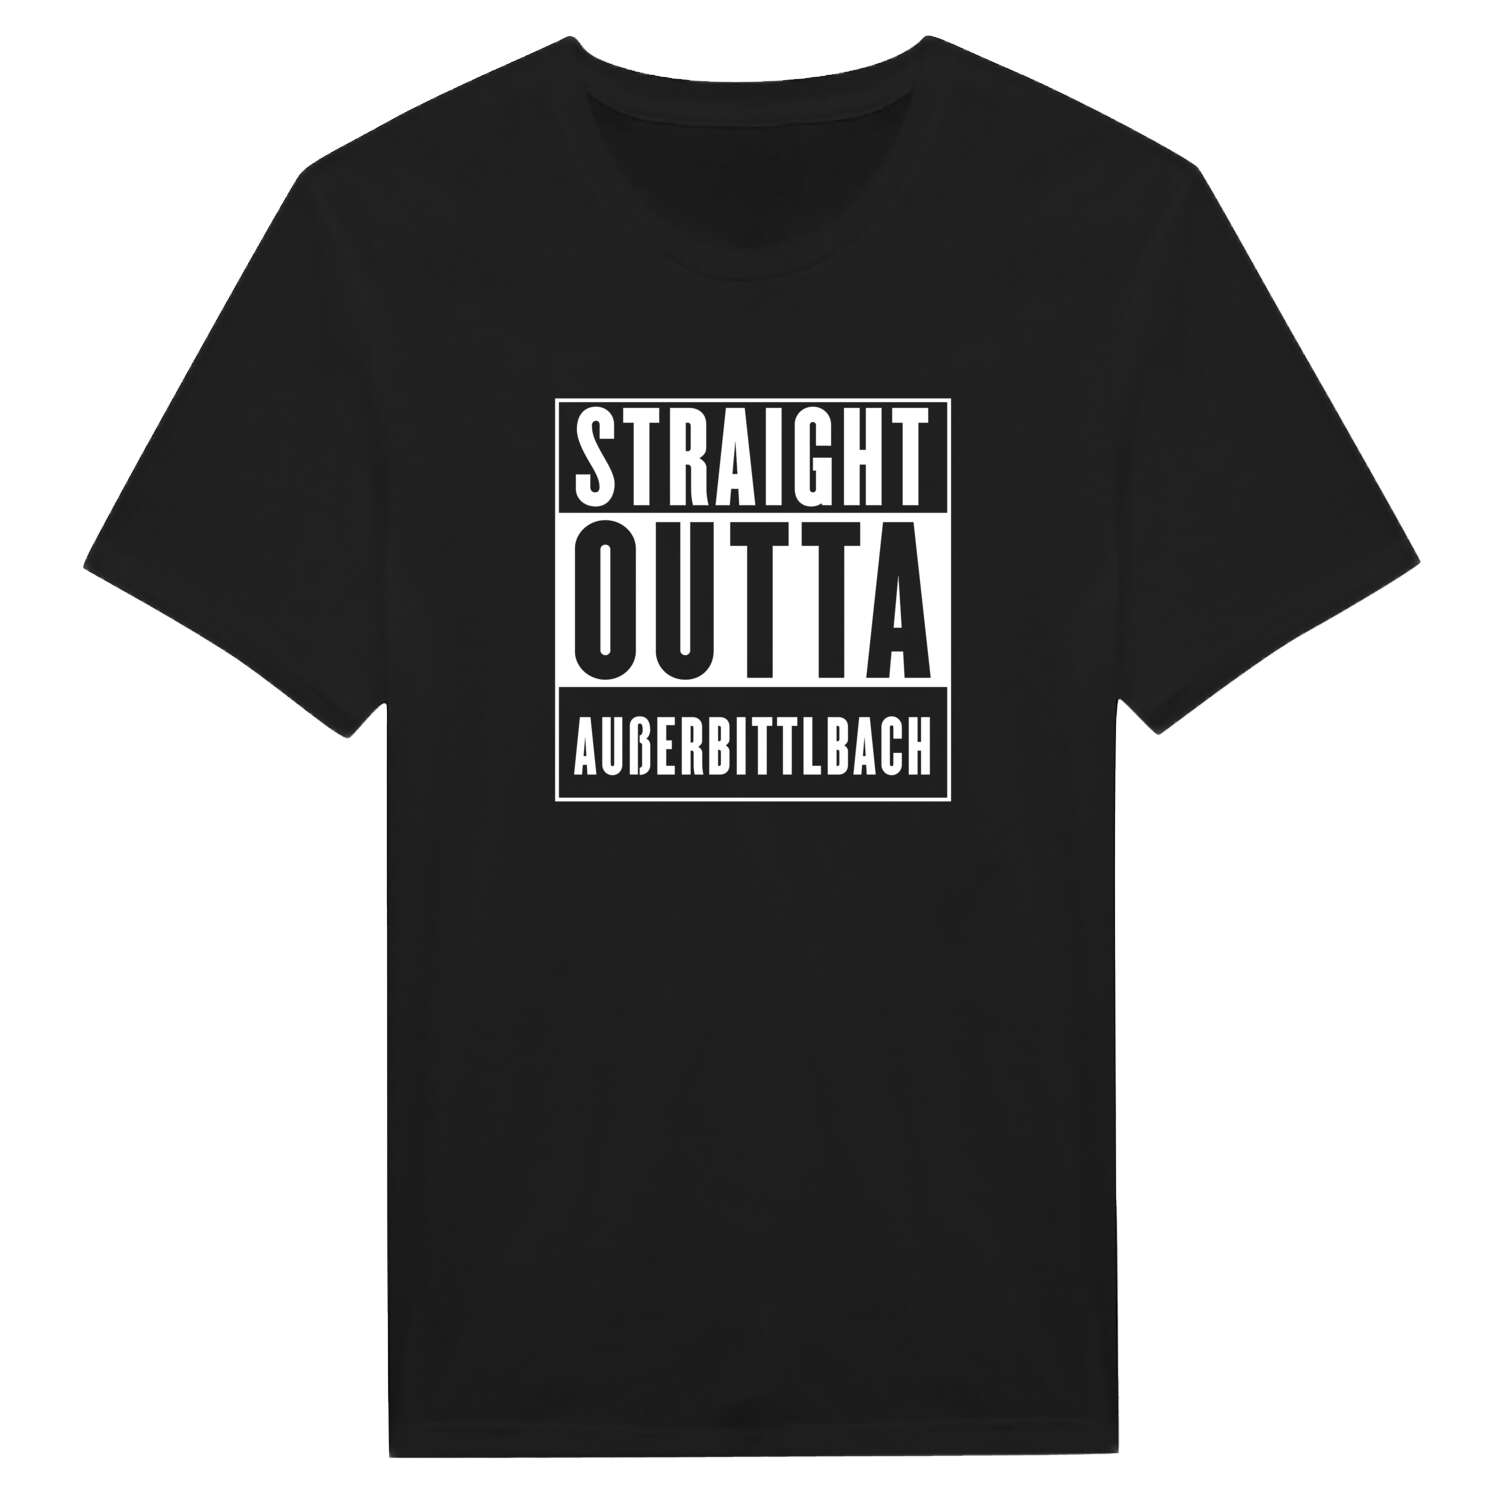 Außerbittlbach T-Shirt »Straight Outta«